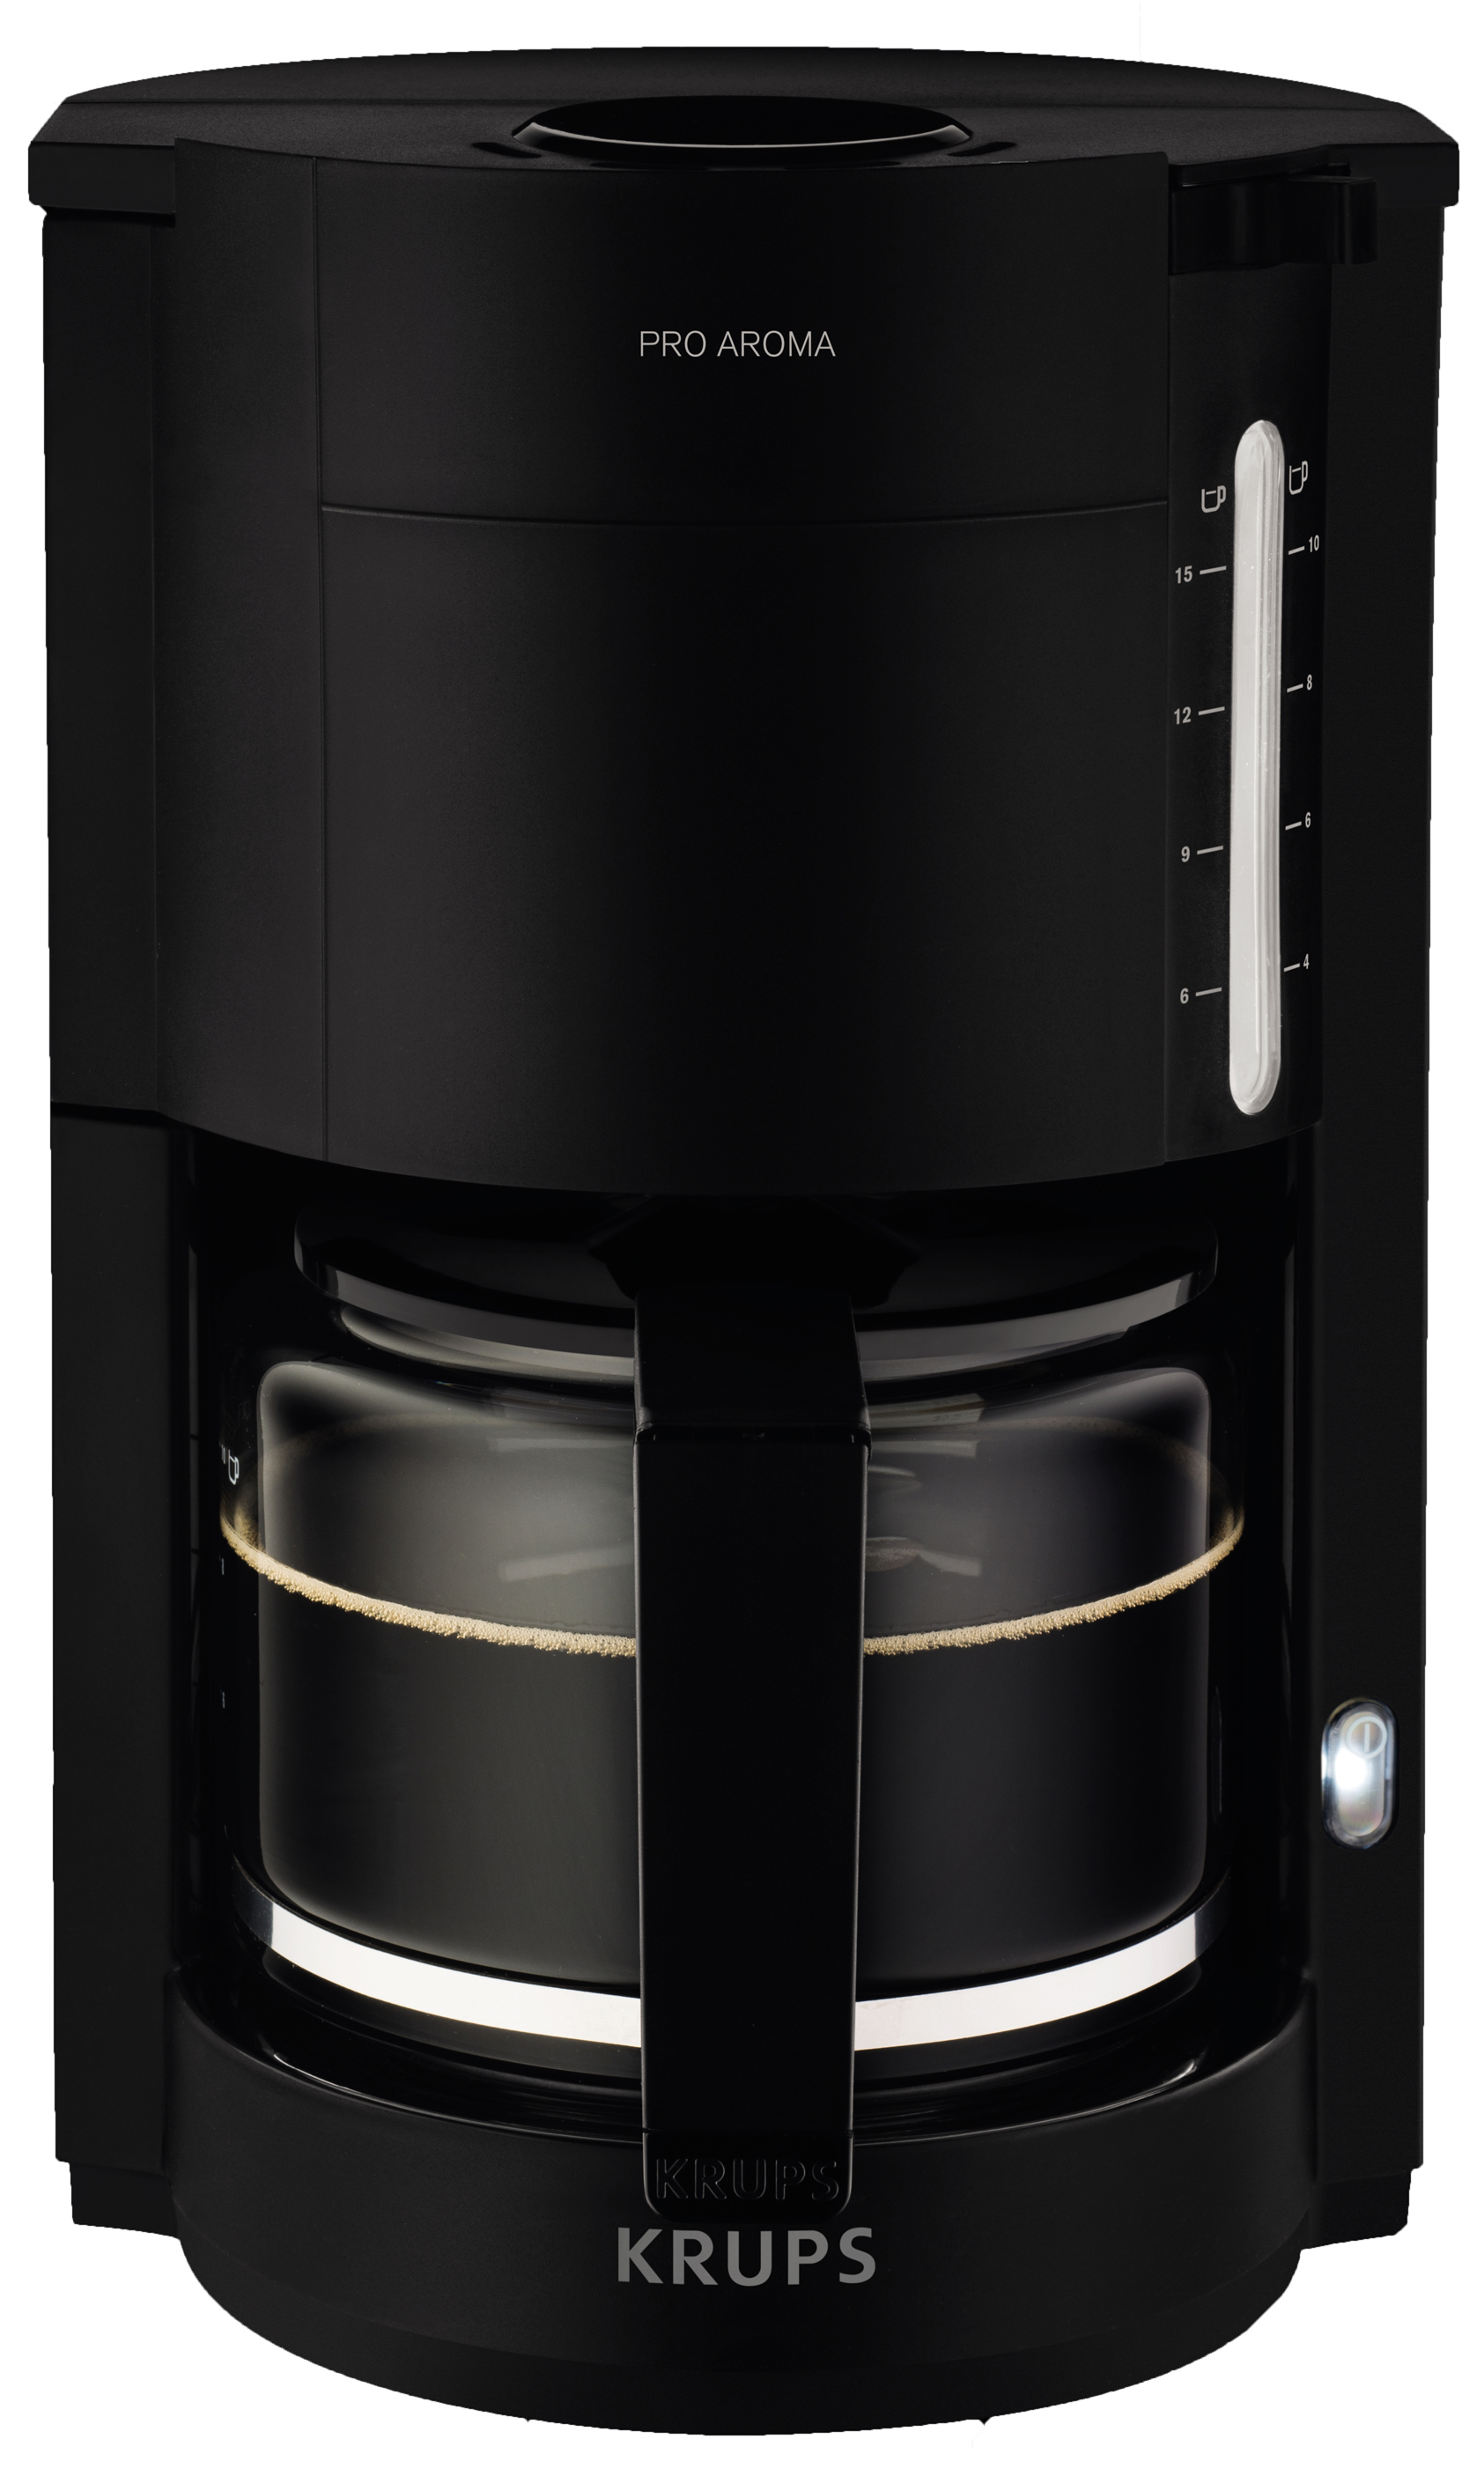 Krups Koffiezetapparaat ProAroma zwart F30908 zwart